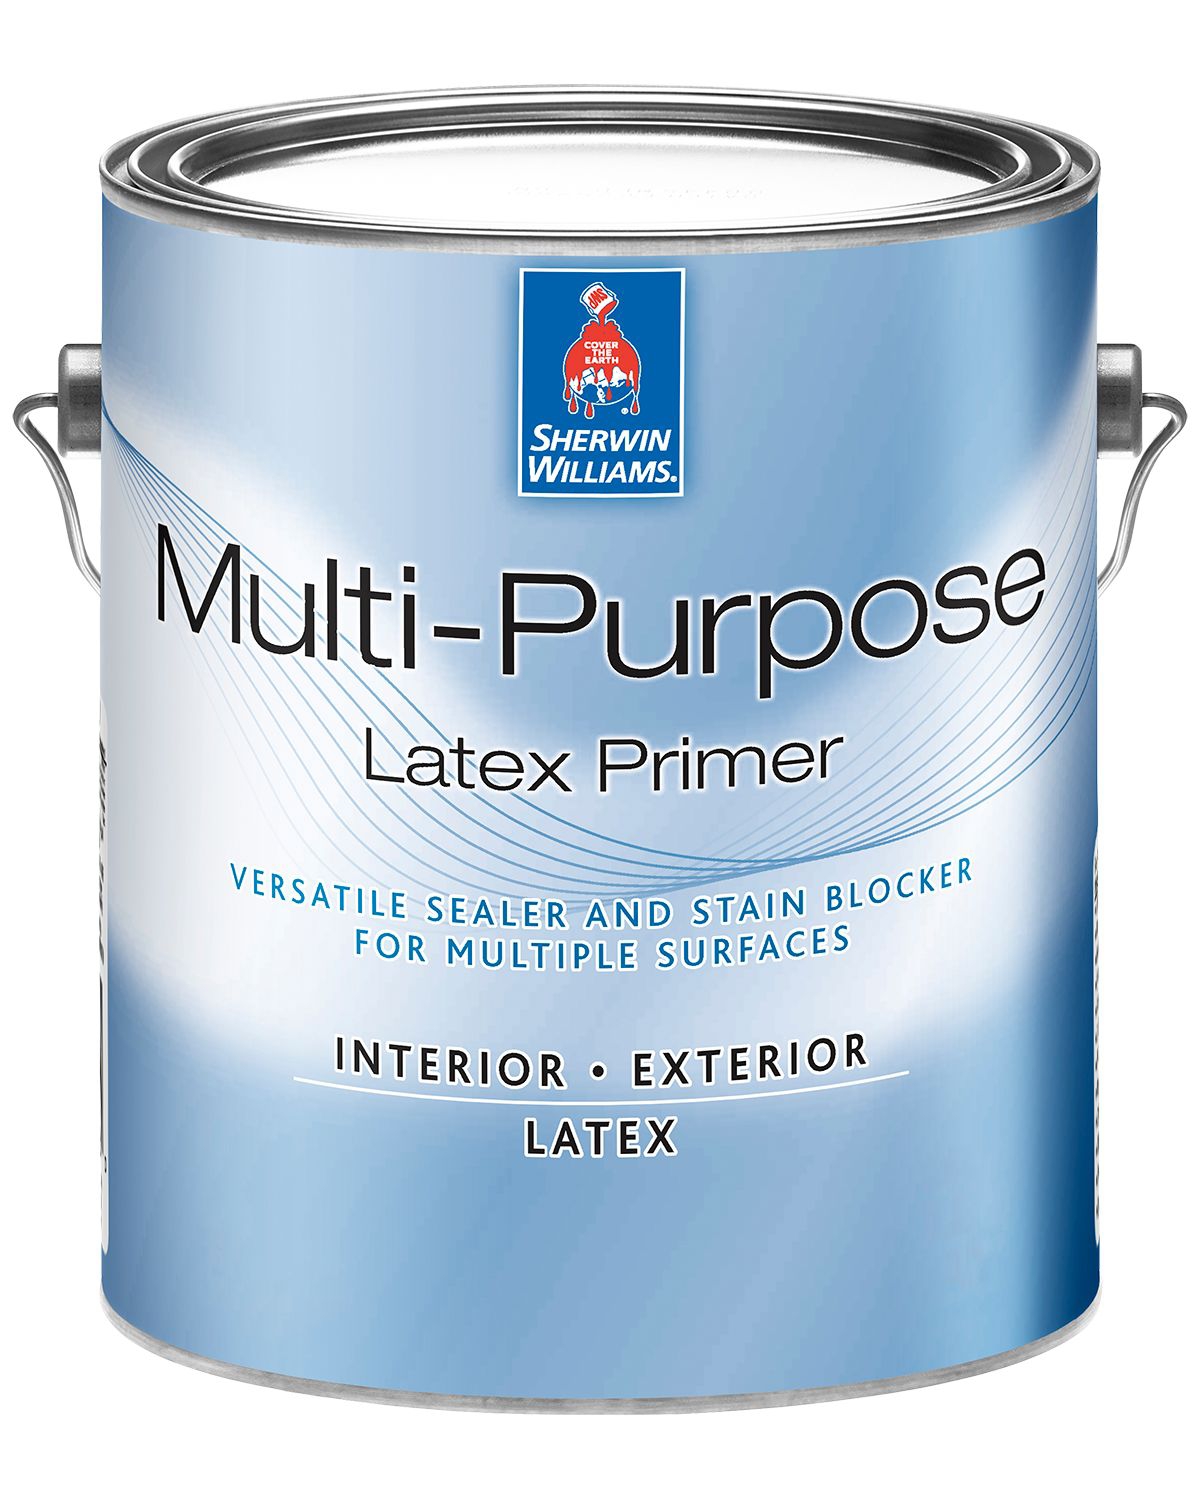 Multi-Purpose Latex Primer/Sealer - Sherwin-Williams